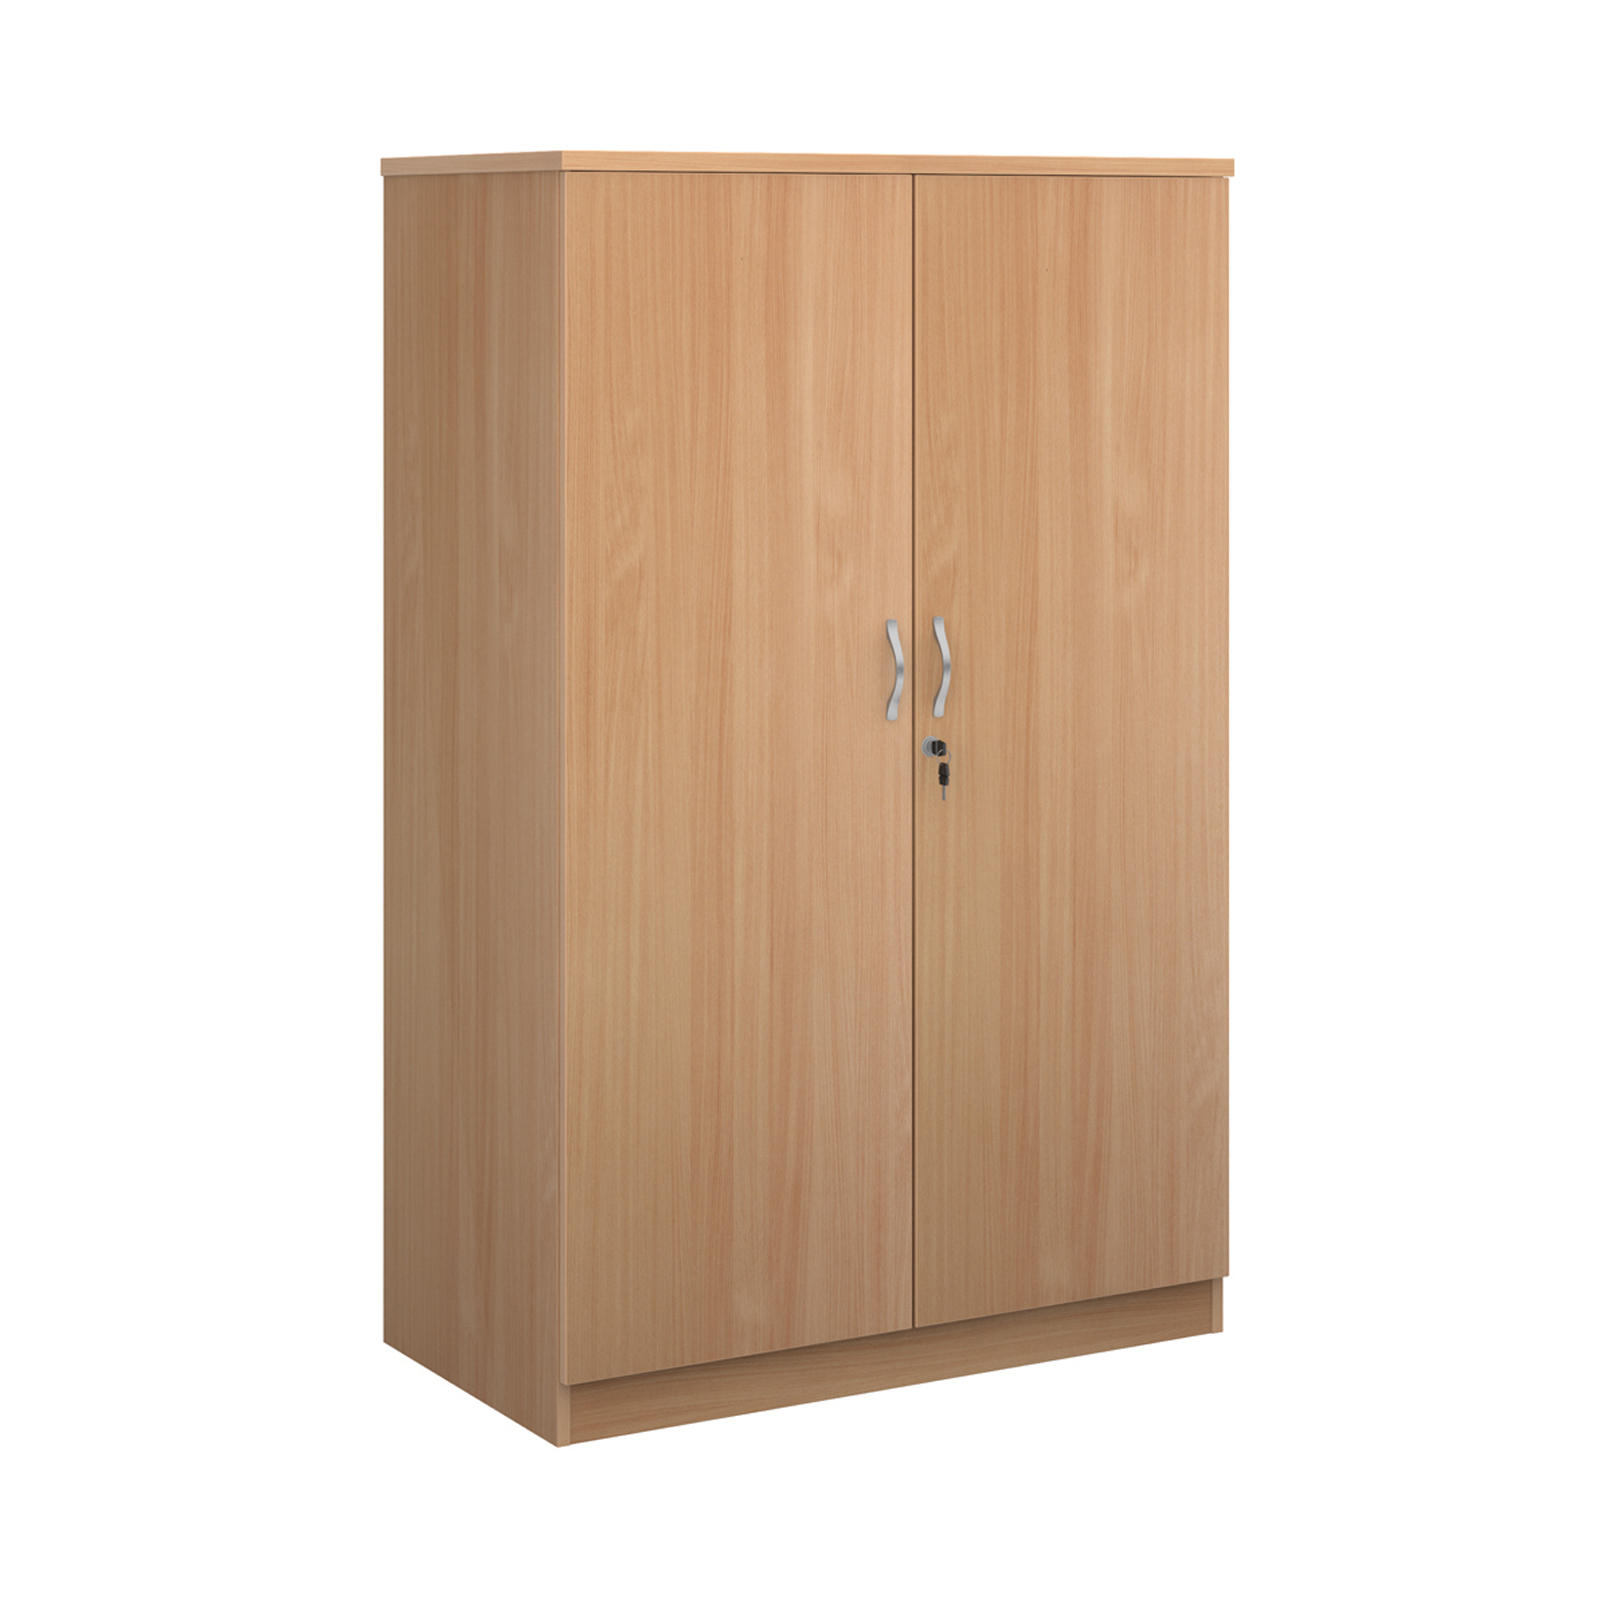 Deluxe Double Door Cupboard with 3 Shelves - Beech